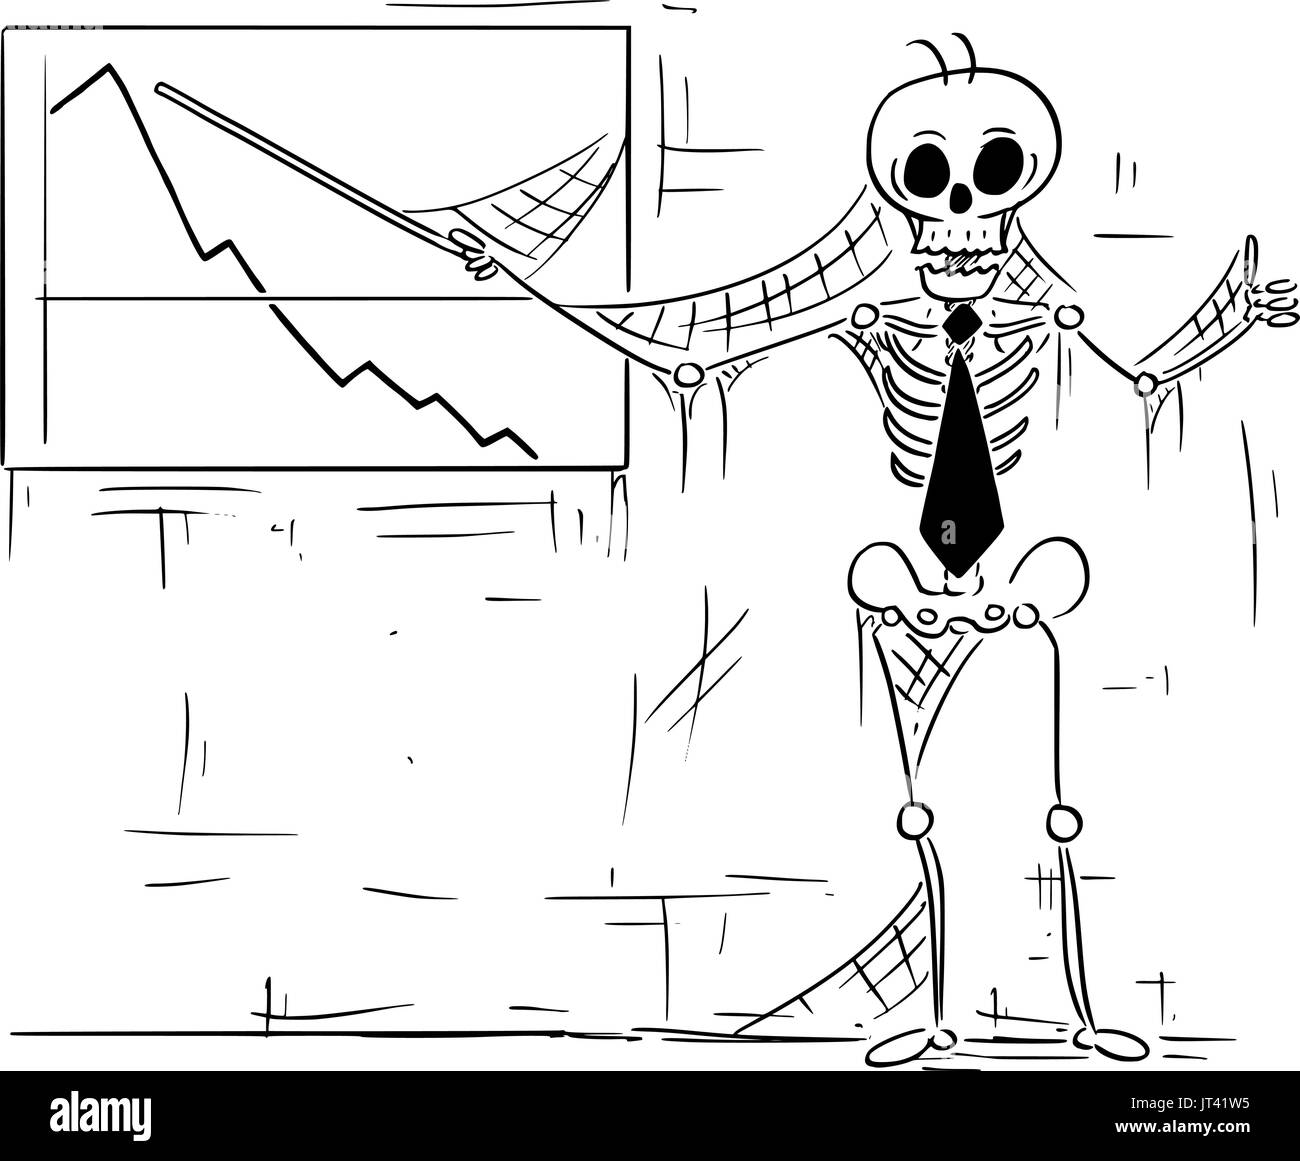 Cartoon illustration du squelette humain de dead man, greffier ; vendeur ou manager pointant à but lucratif et graph showing Thumbs up geste. Illustration de Vecteur